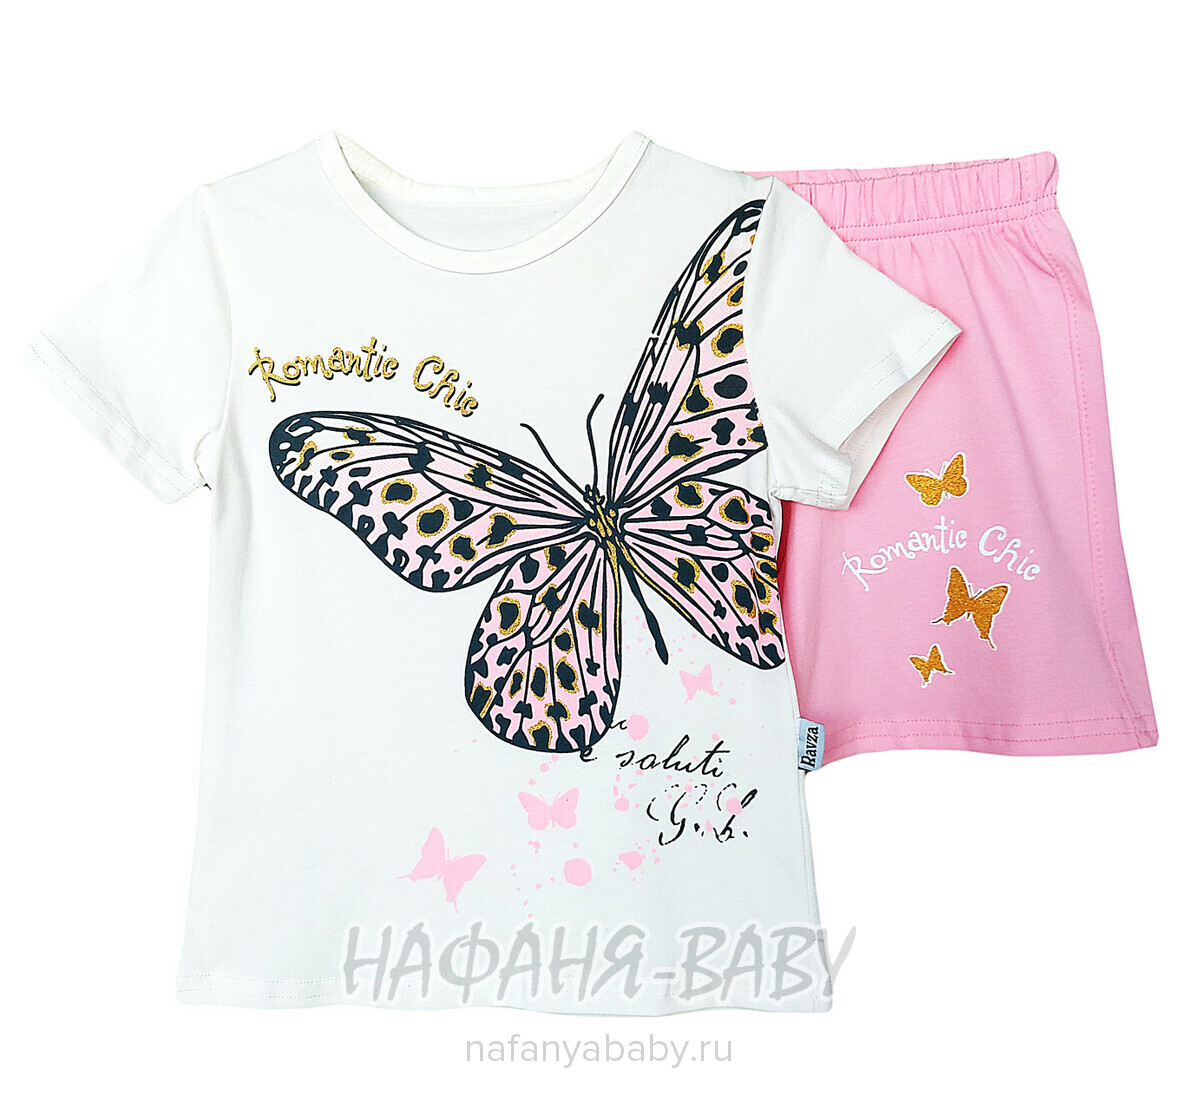 Детский костюм (футболка + шорты) RAVZA арт: 36110, 3-6 лет, цвет кремовый с розовым, оптом Турция